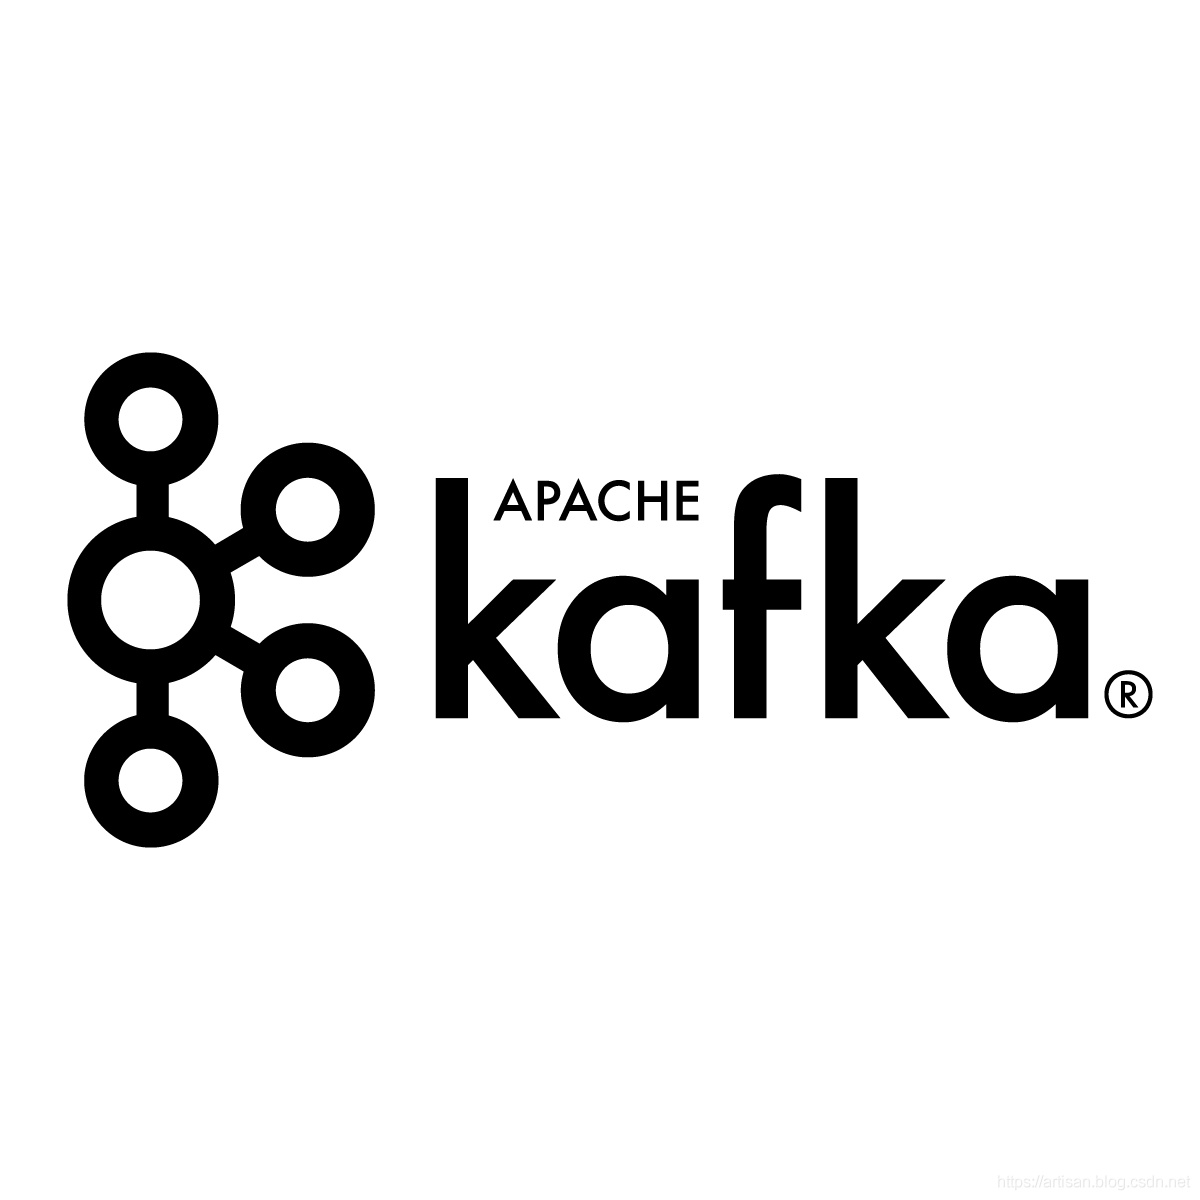 Kafka - 图解生产者消息发送流程